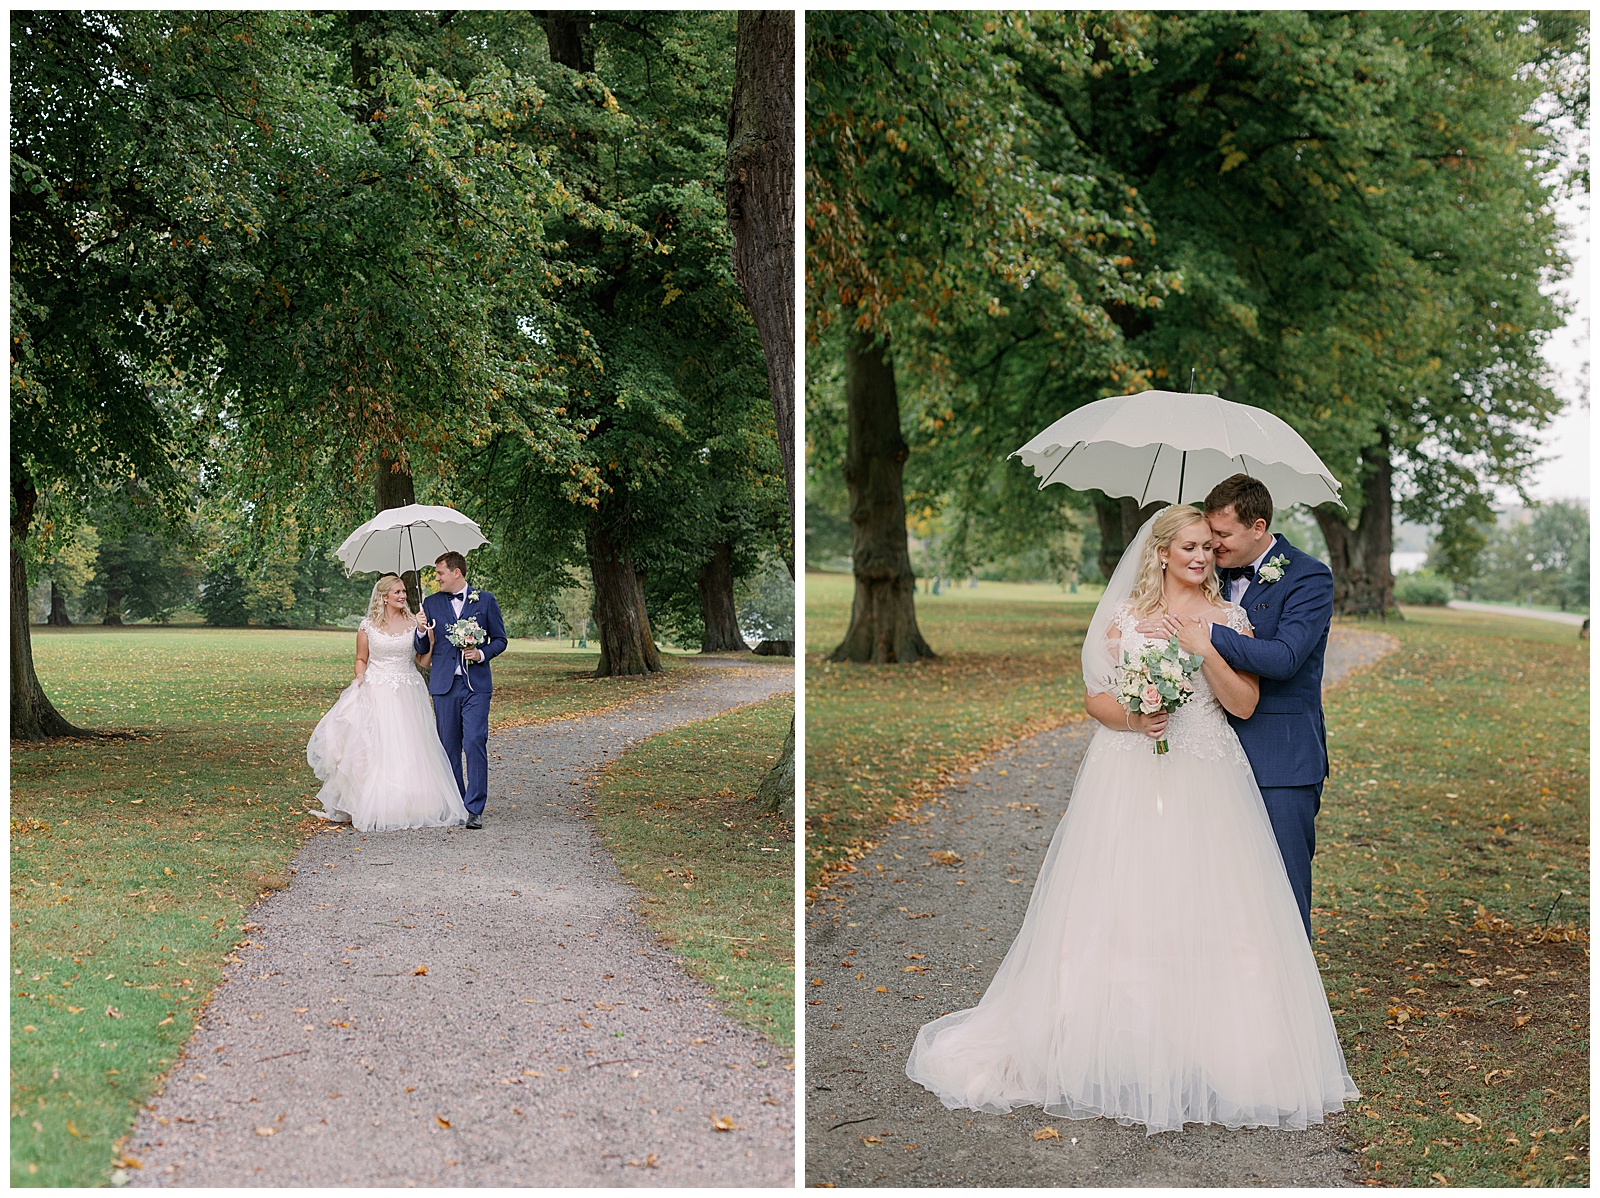 Brudpar på bröllopsdagen i regn under paraply